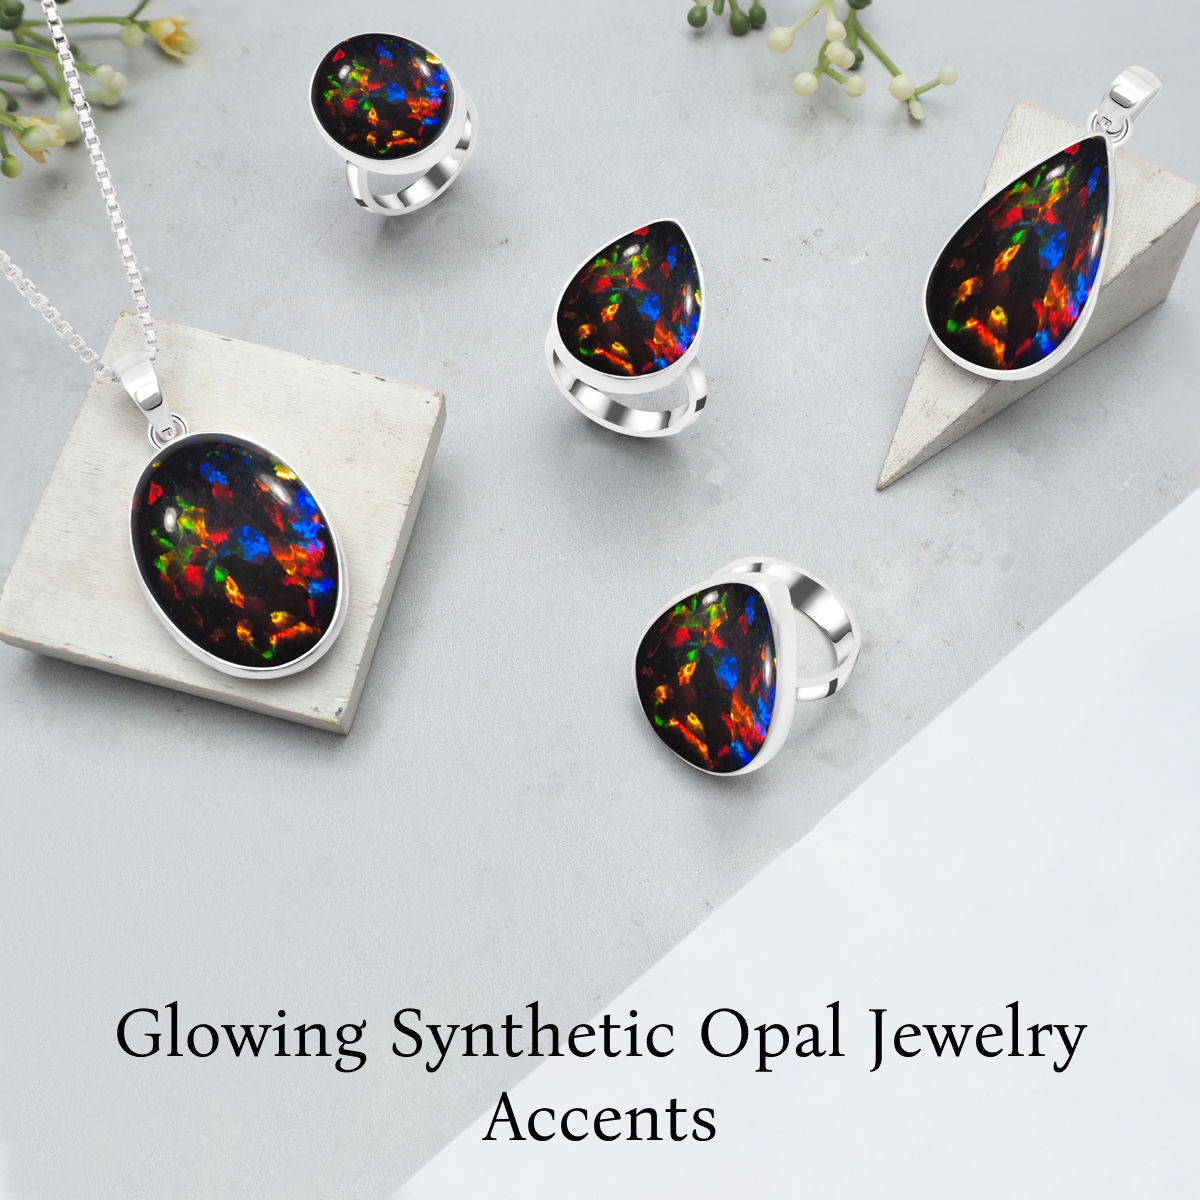 Stylish Ways to Wear Synthetic Opal Jewelry